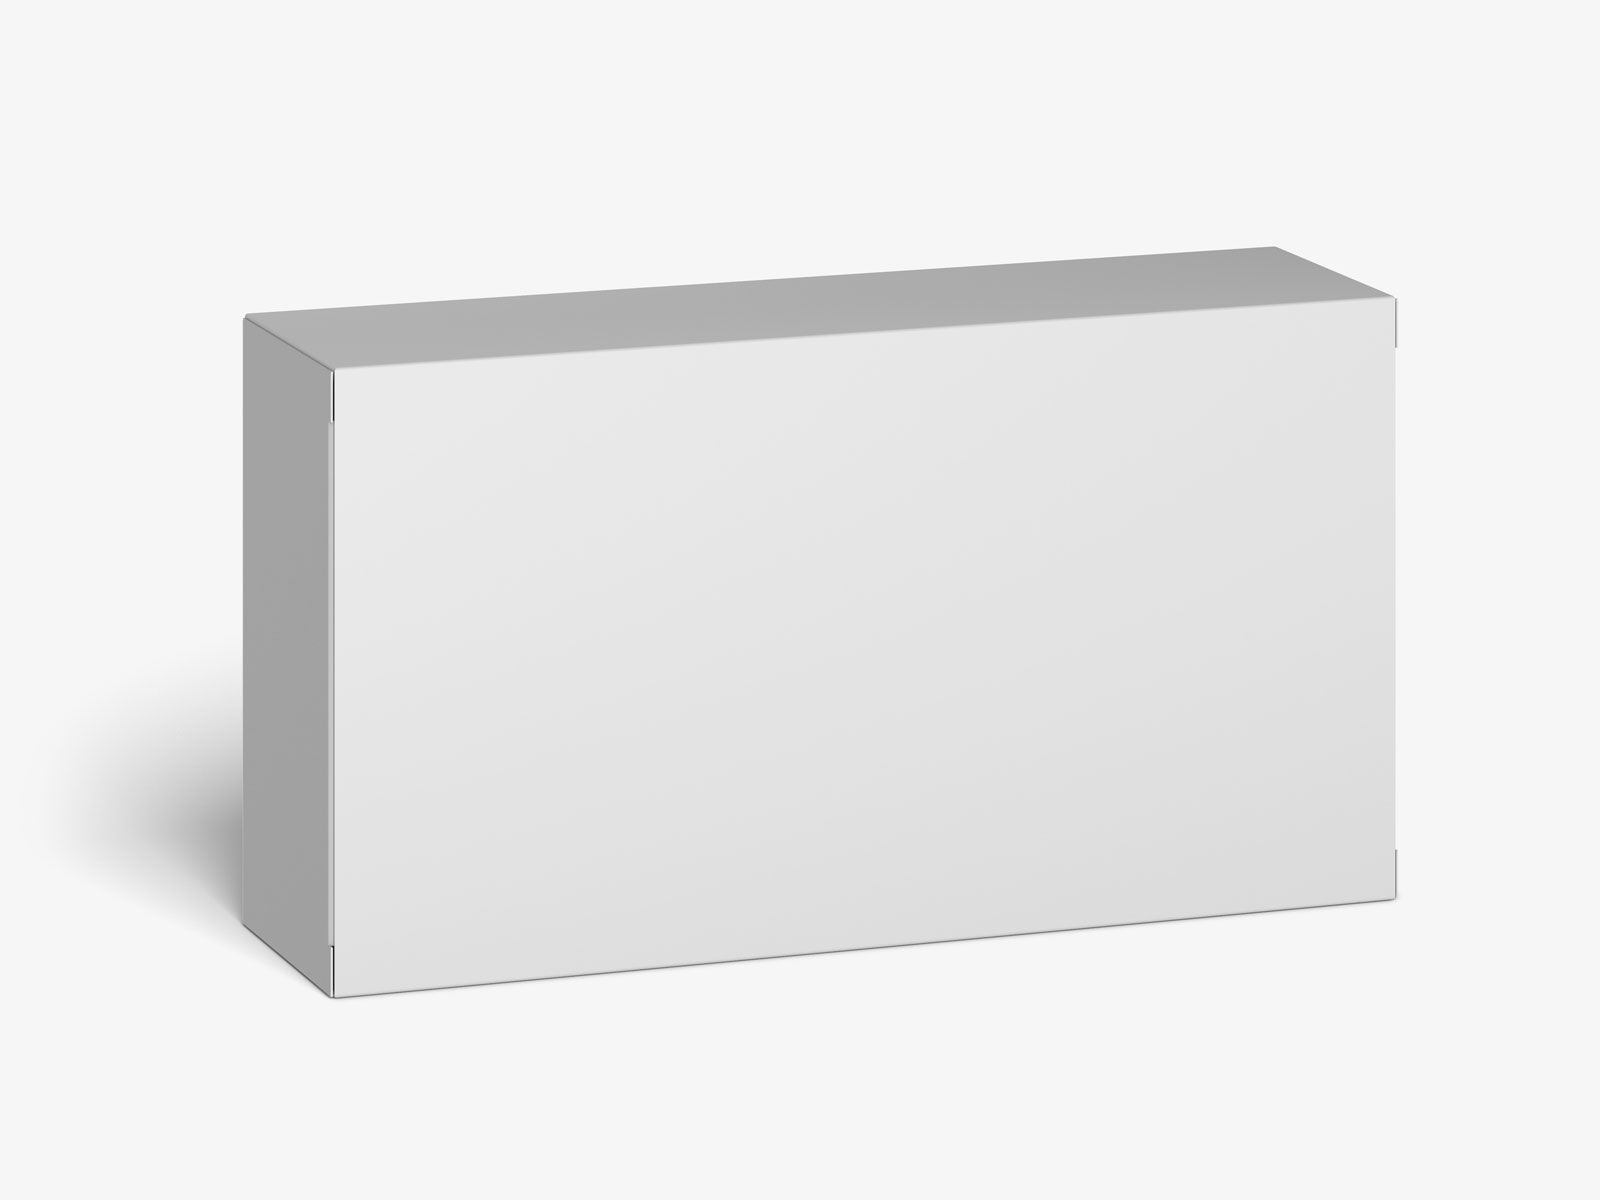 长方形盒子包装设计贴图模板PSD样机模型110x60x30mm Box mockup